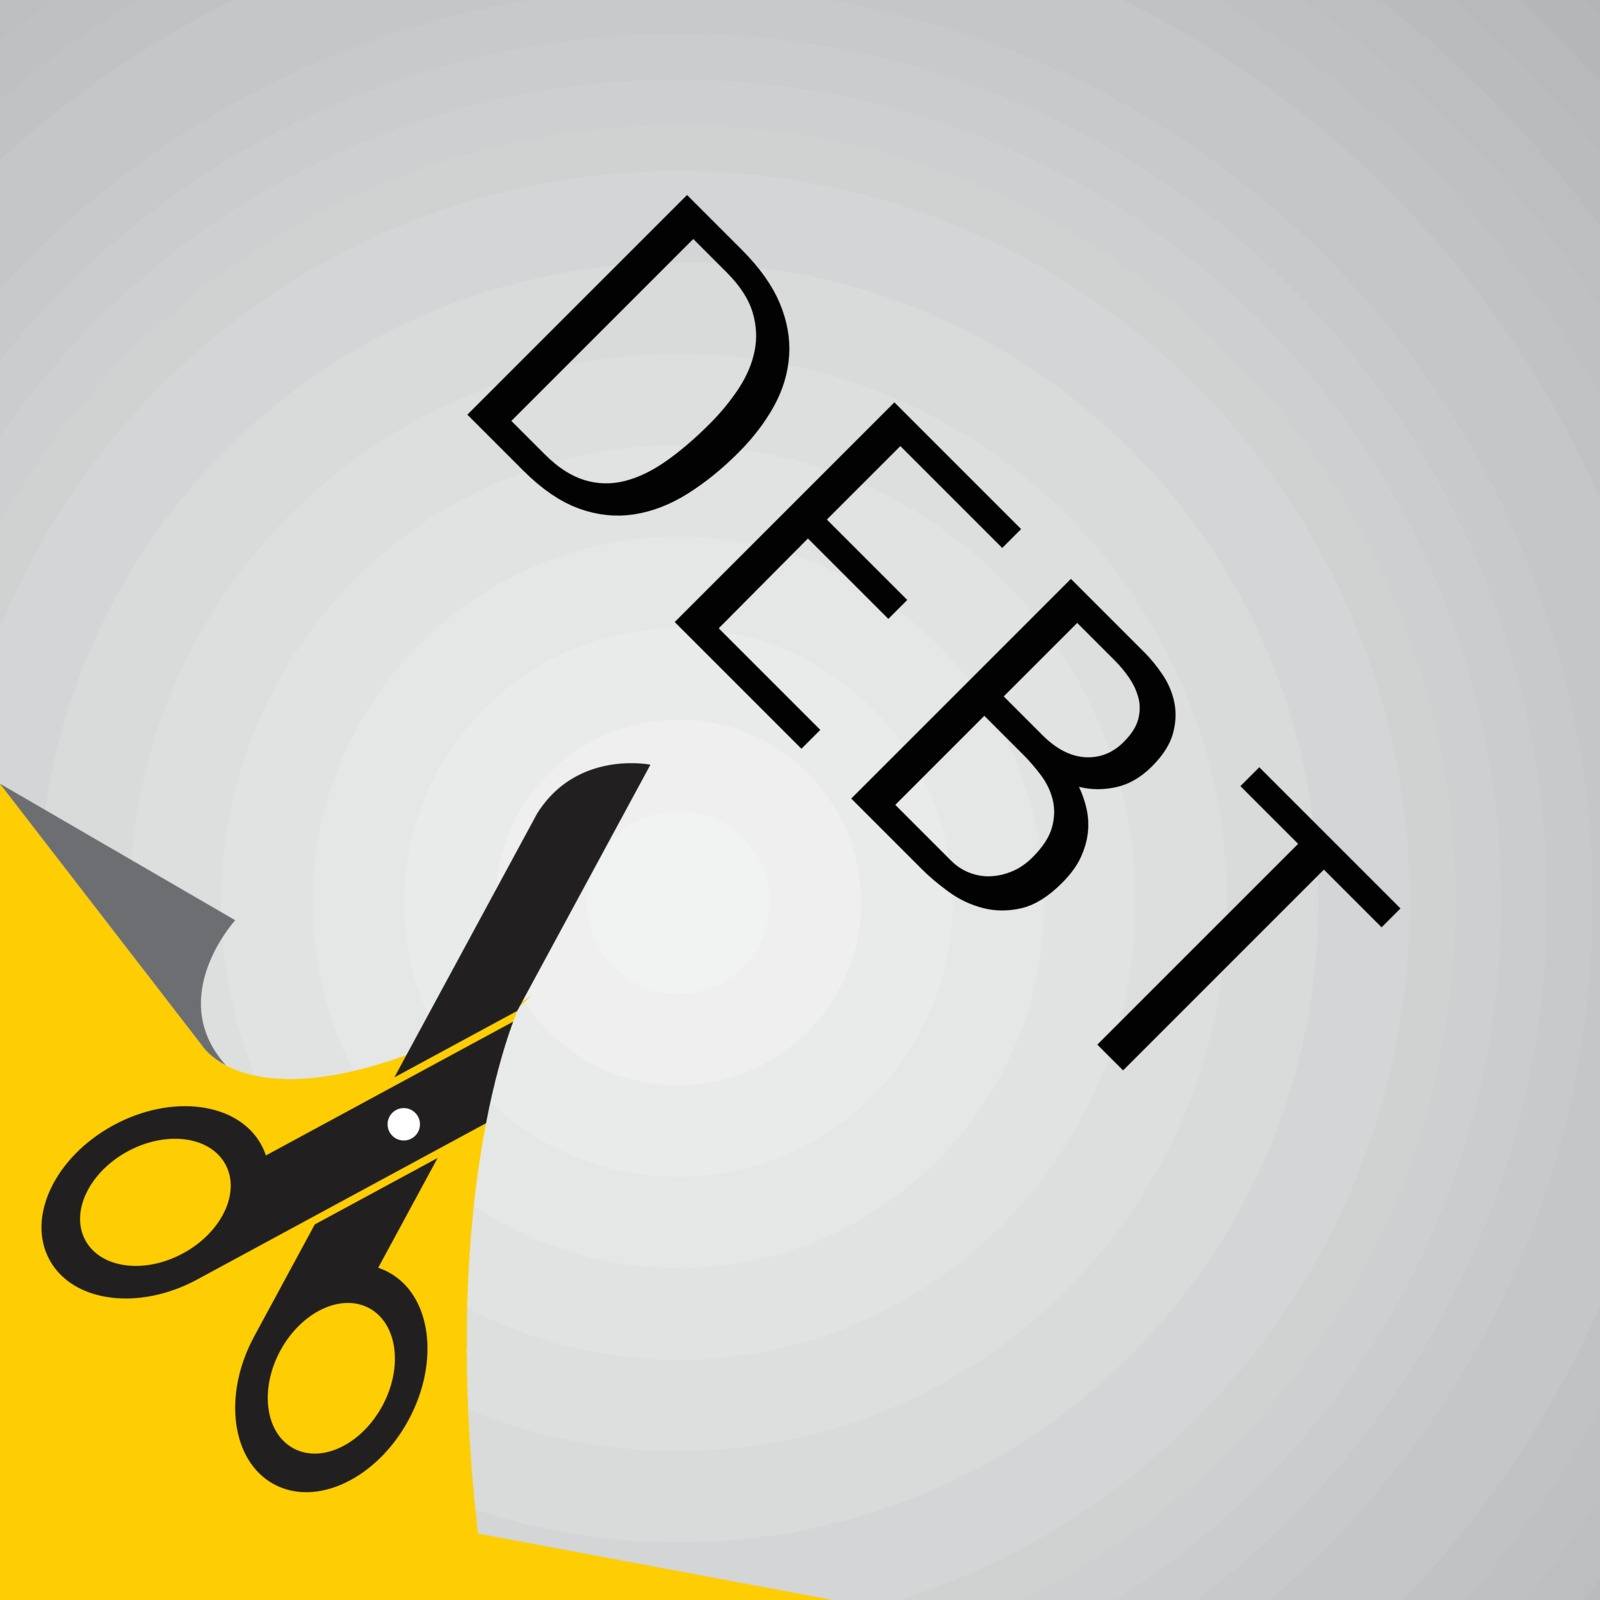 Cut debt by jesadaphorn